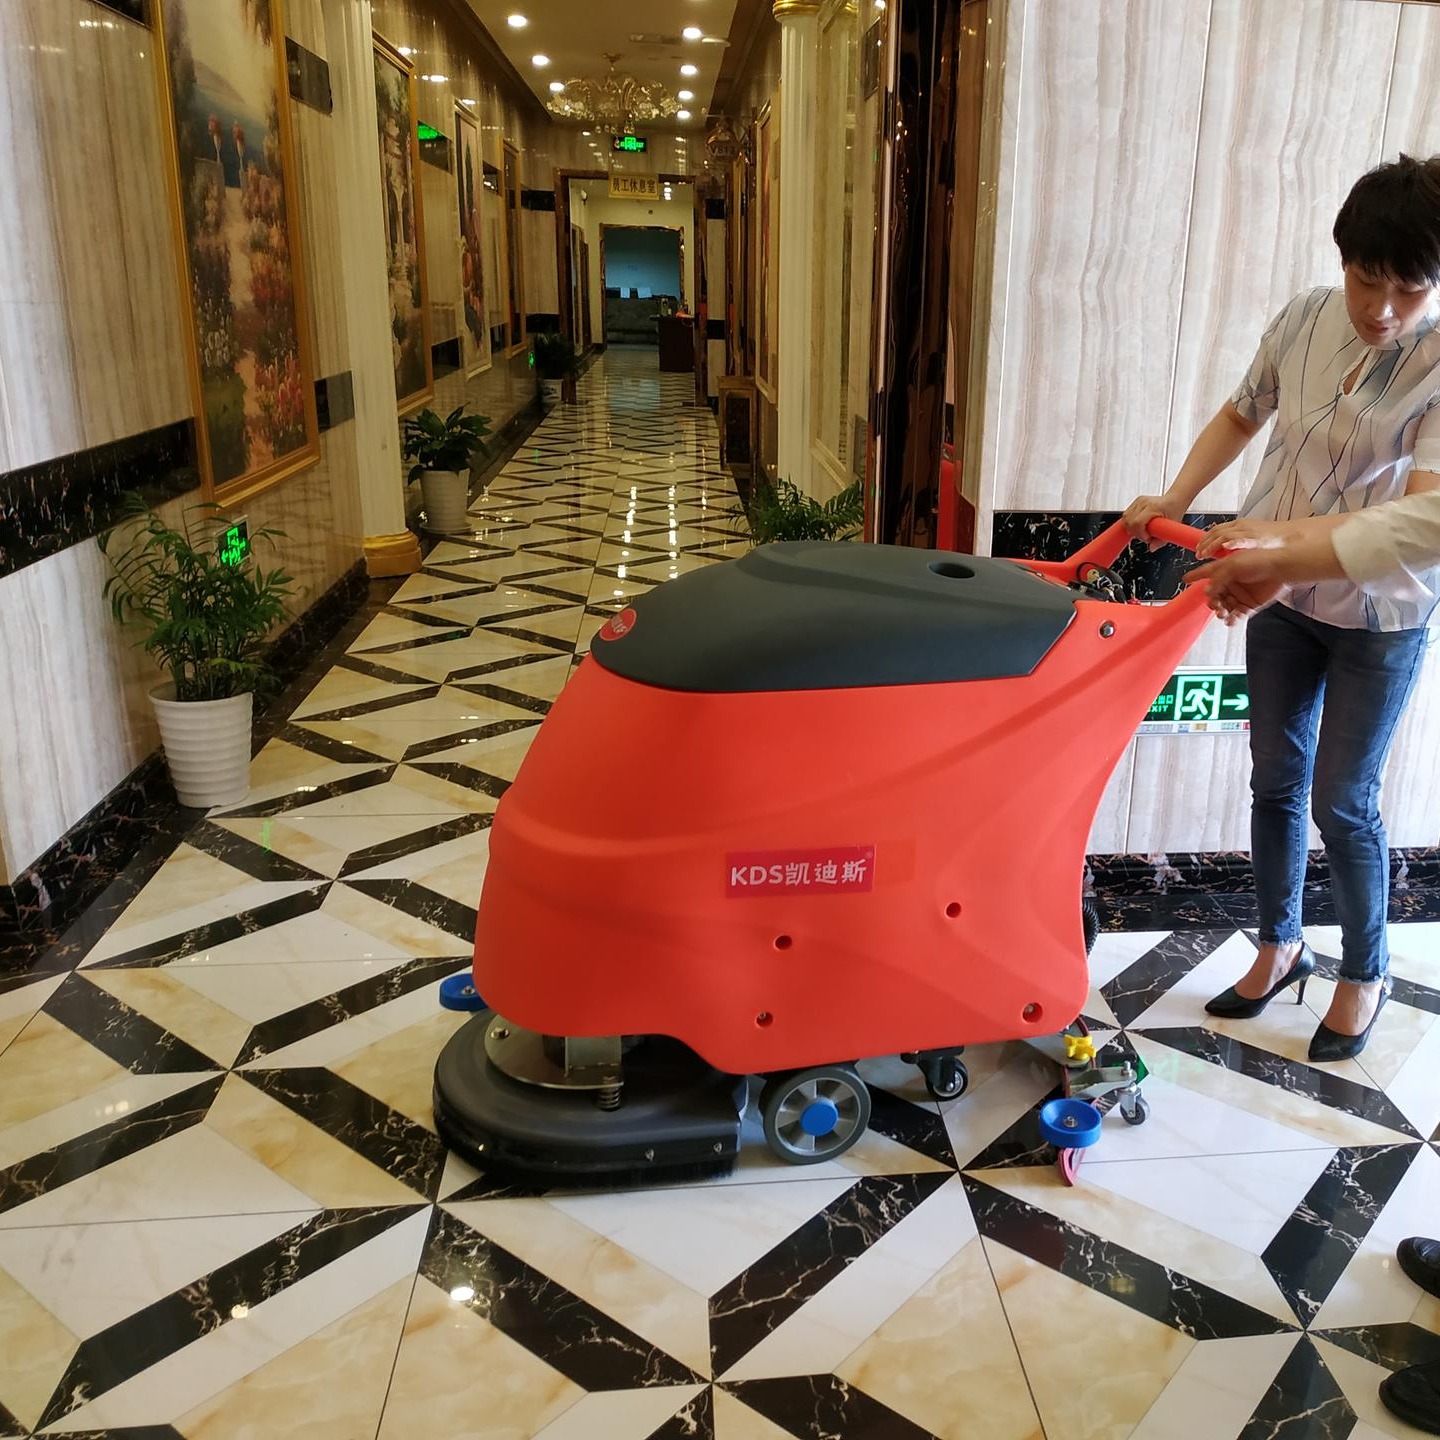 凯迪斯手推式全自动洗地机X2 广东和惠州超市物业工厂KTV保洁擦地机 充电式洗地机